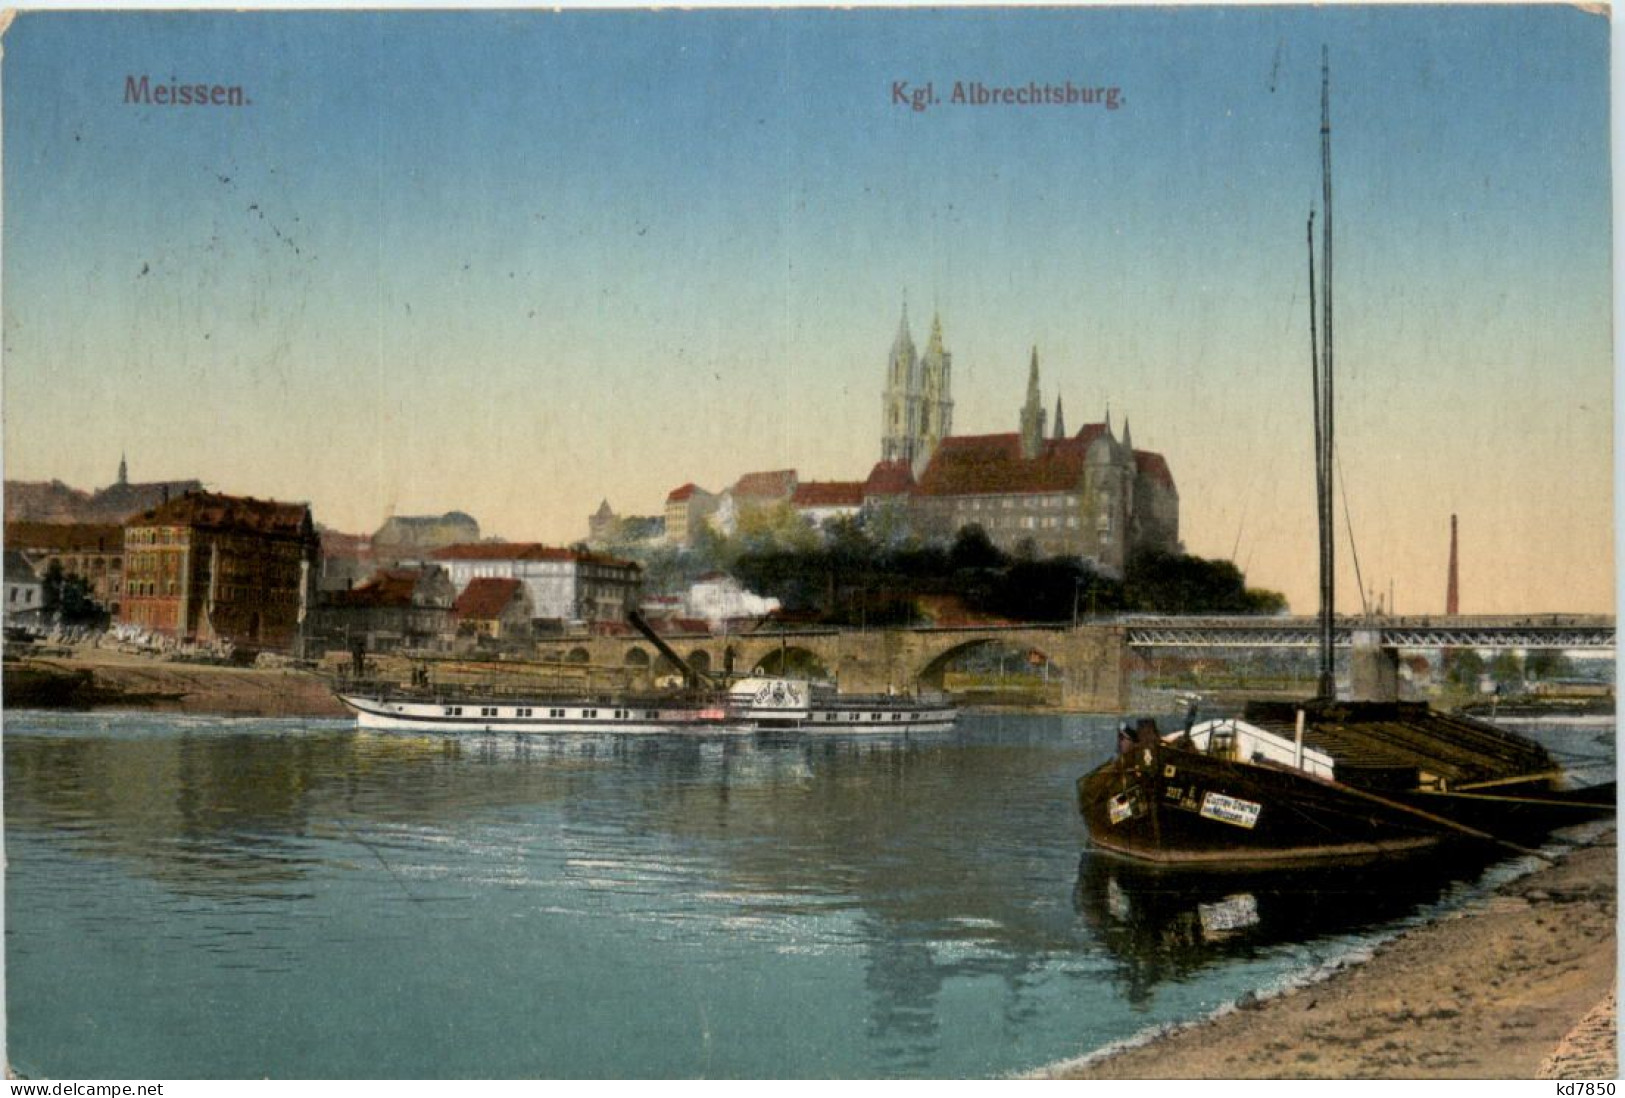 Meissen, Kgl. Albrechtsburg - Meissen